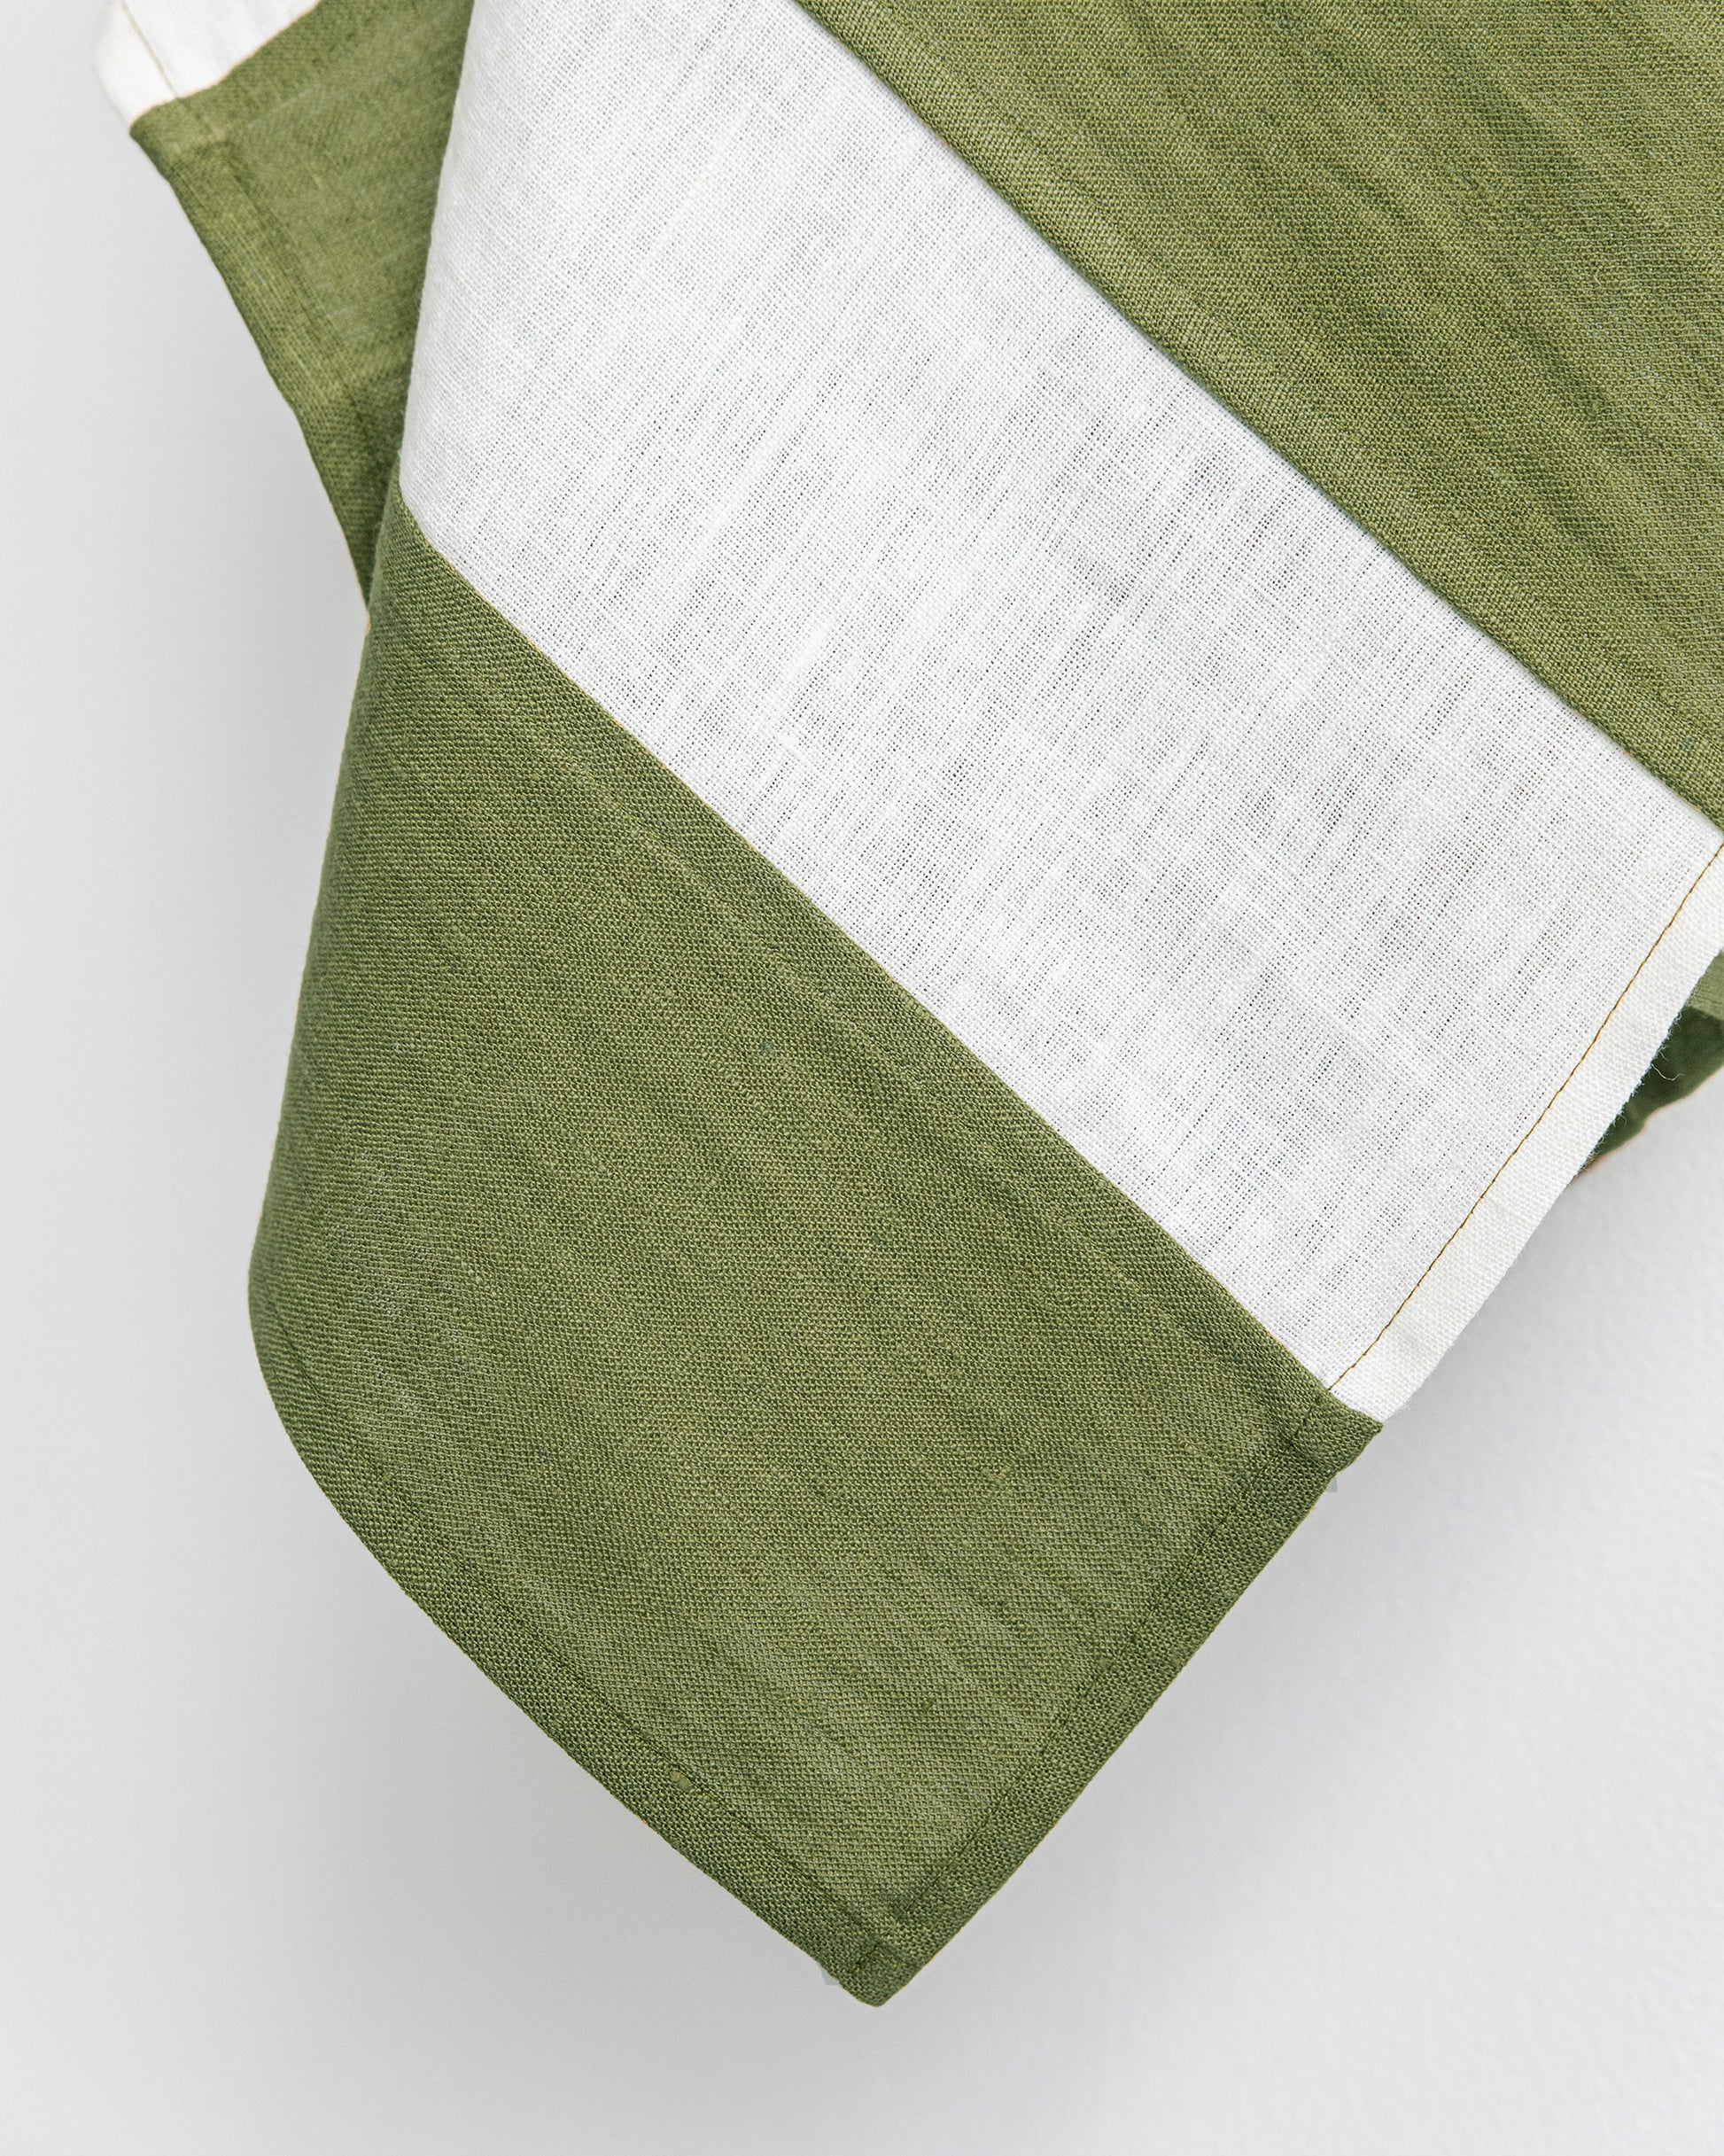 Zero-waste striped linen tea towel in Forest green - MagicLinen